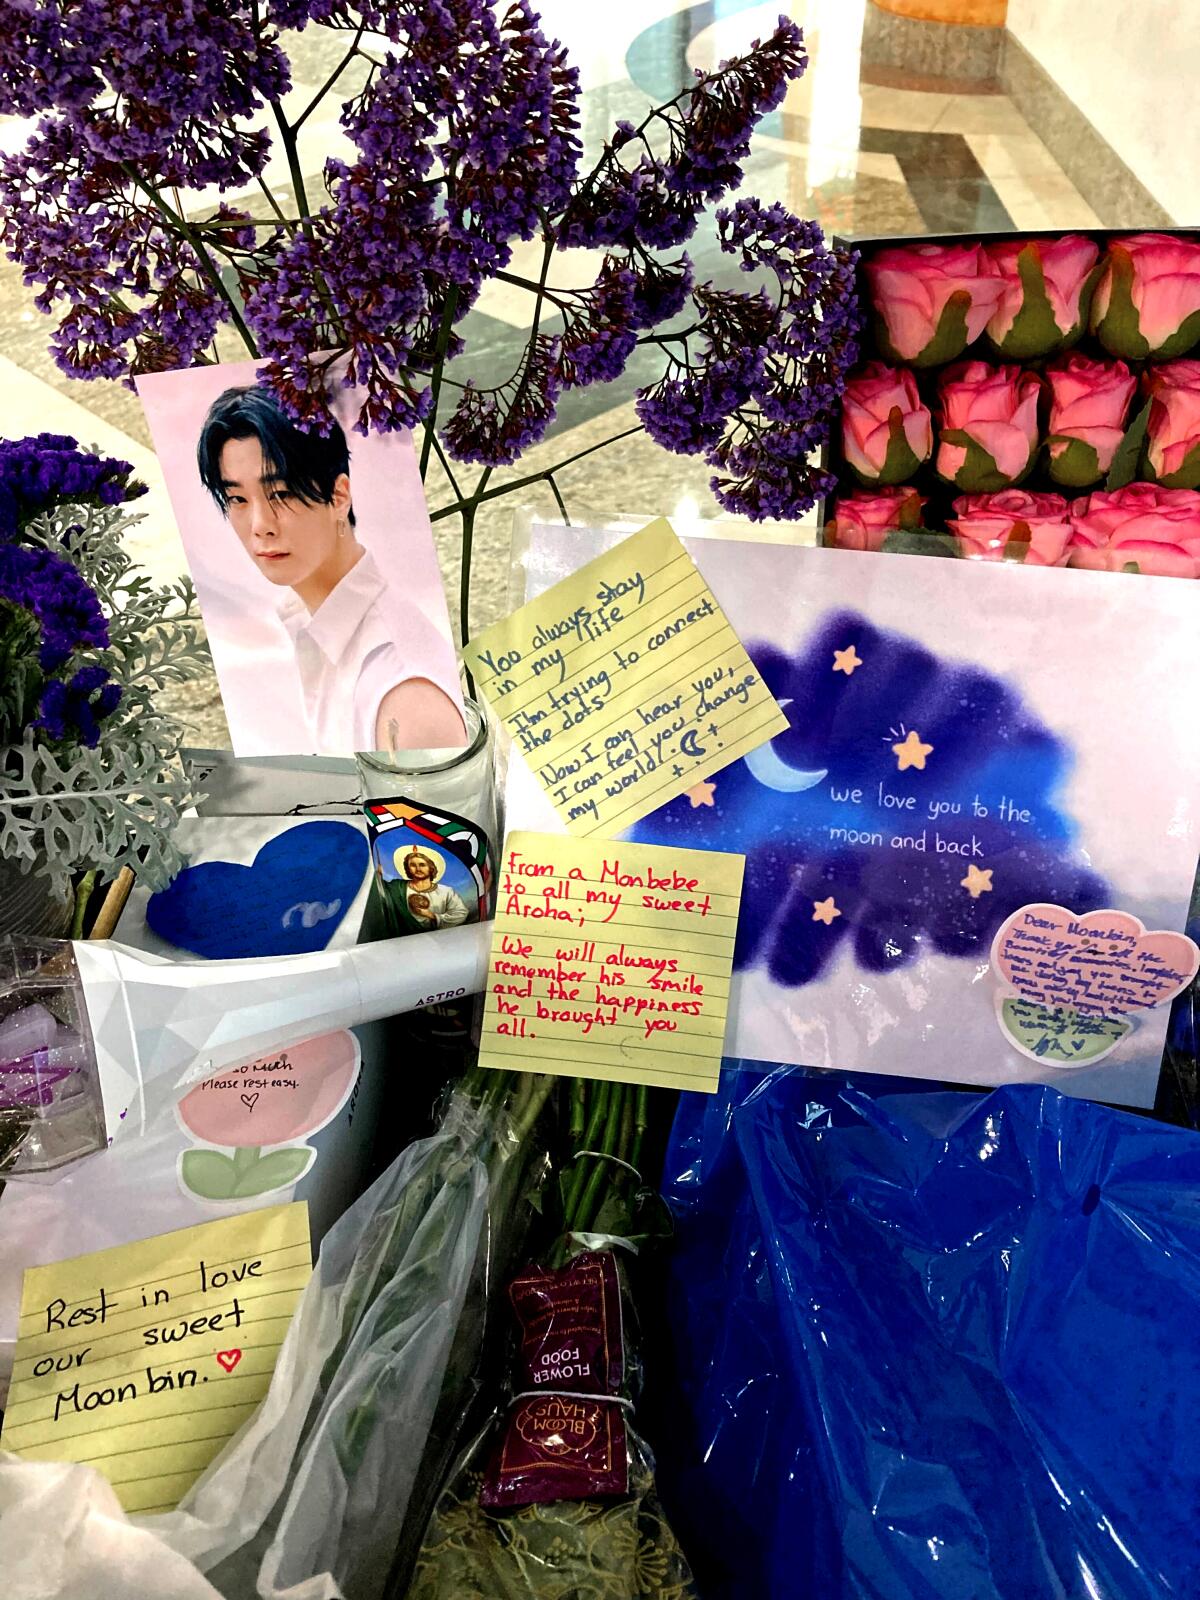 Moonbin: In Koreatown, fans mourn the loss of a K-pop star - Los